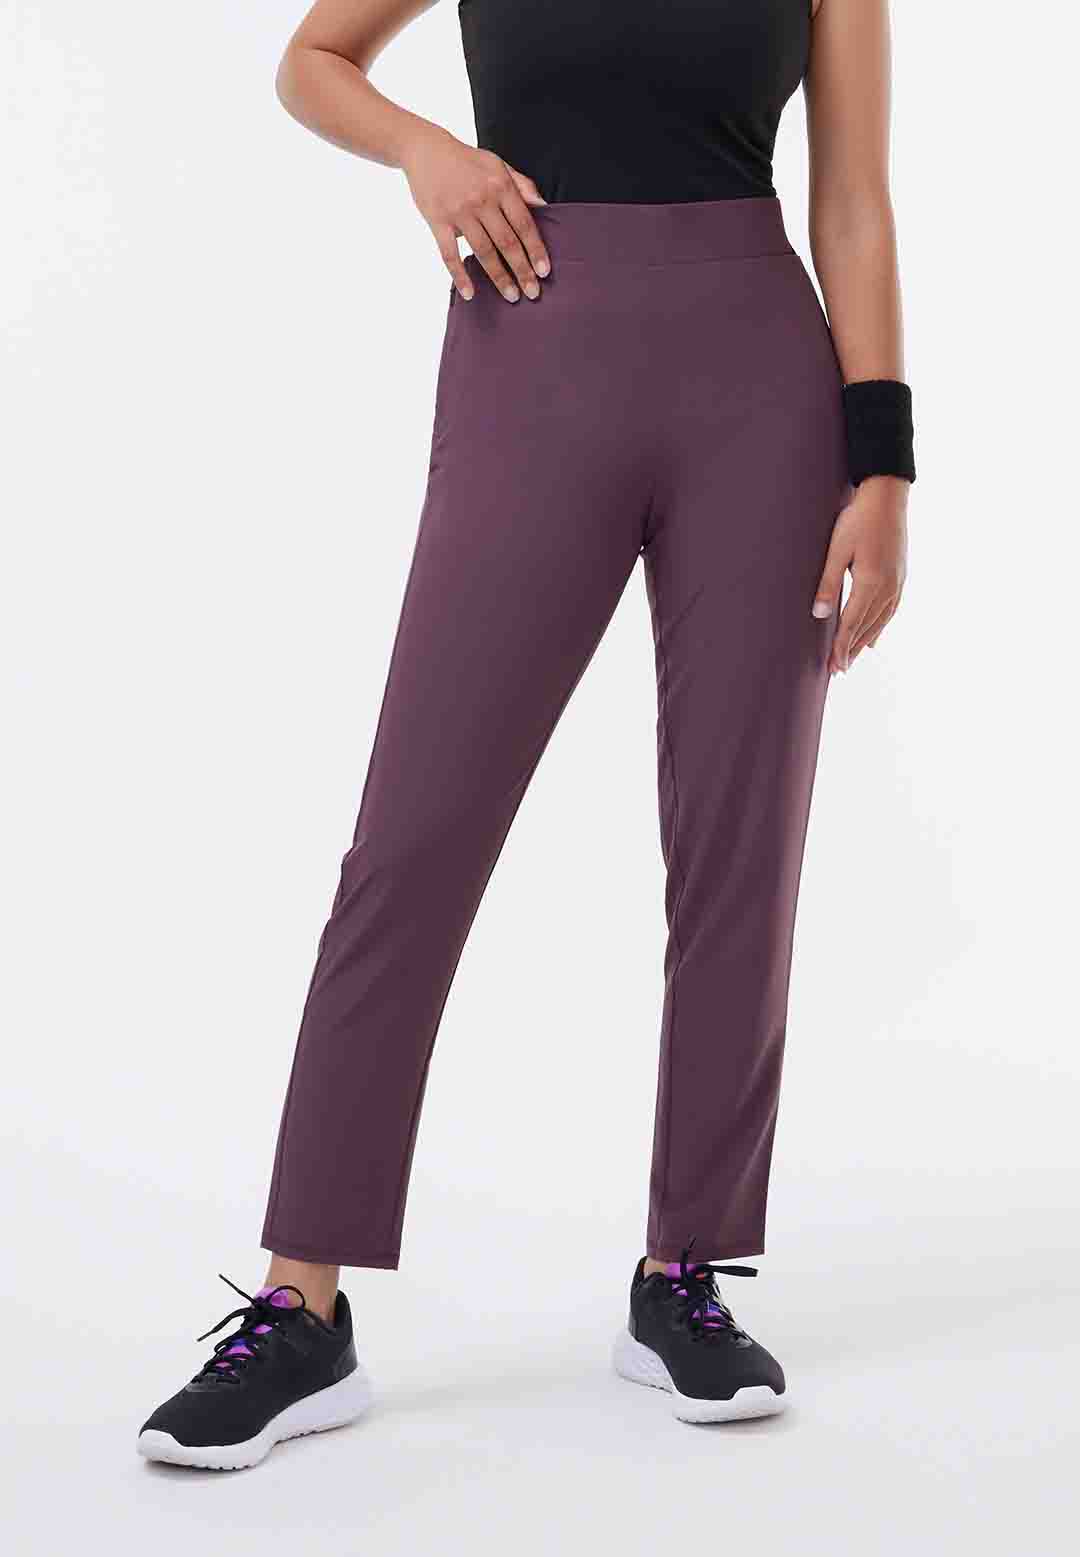 Women's Trousers - Buy Trousers for Women & Ladies Online by Blissclub